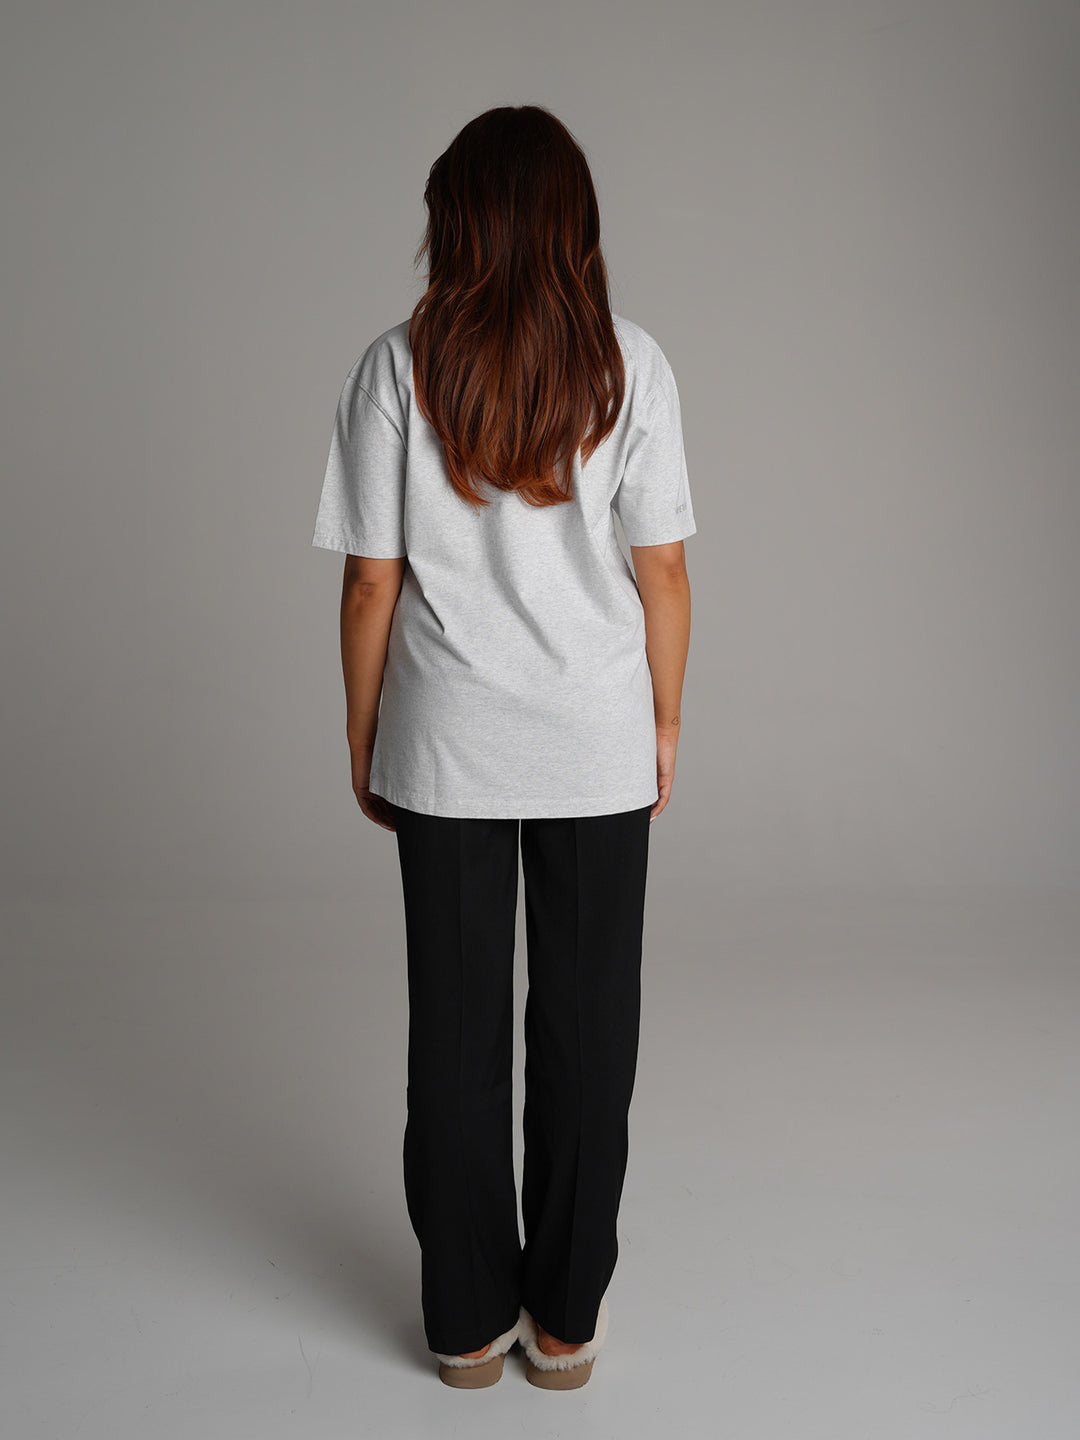 SO BASIC - T-Shirt • Grey Melange